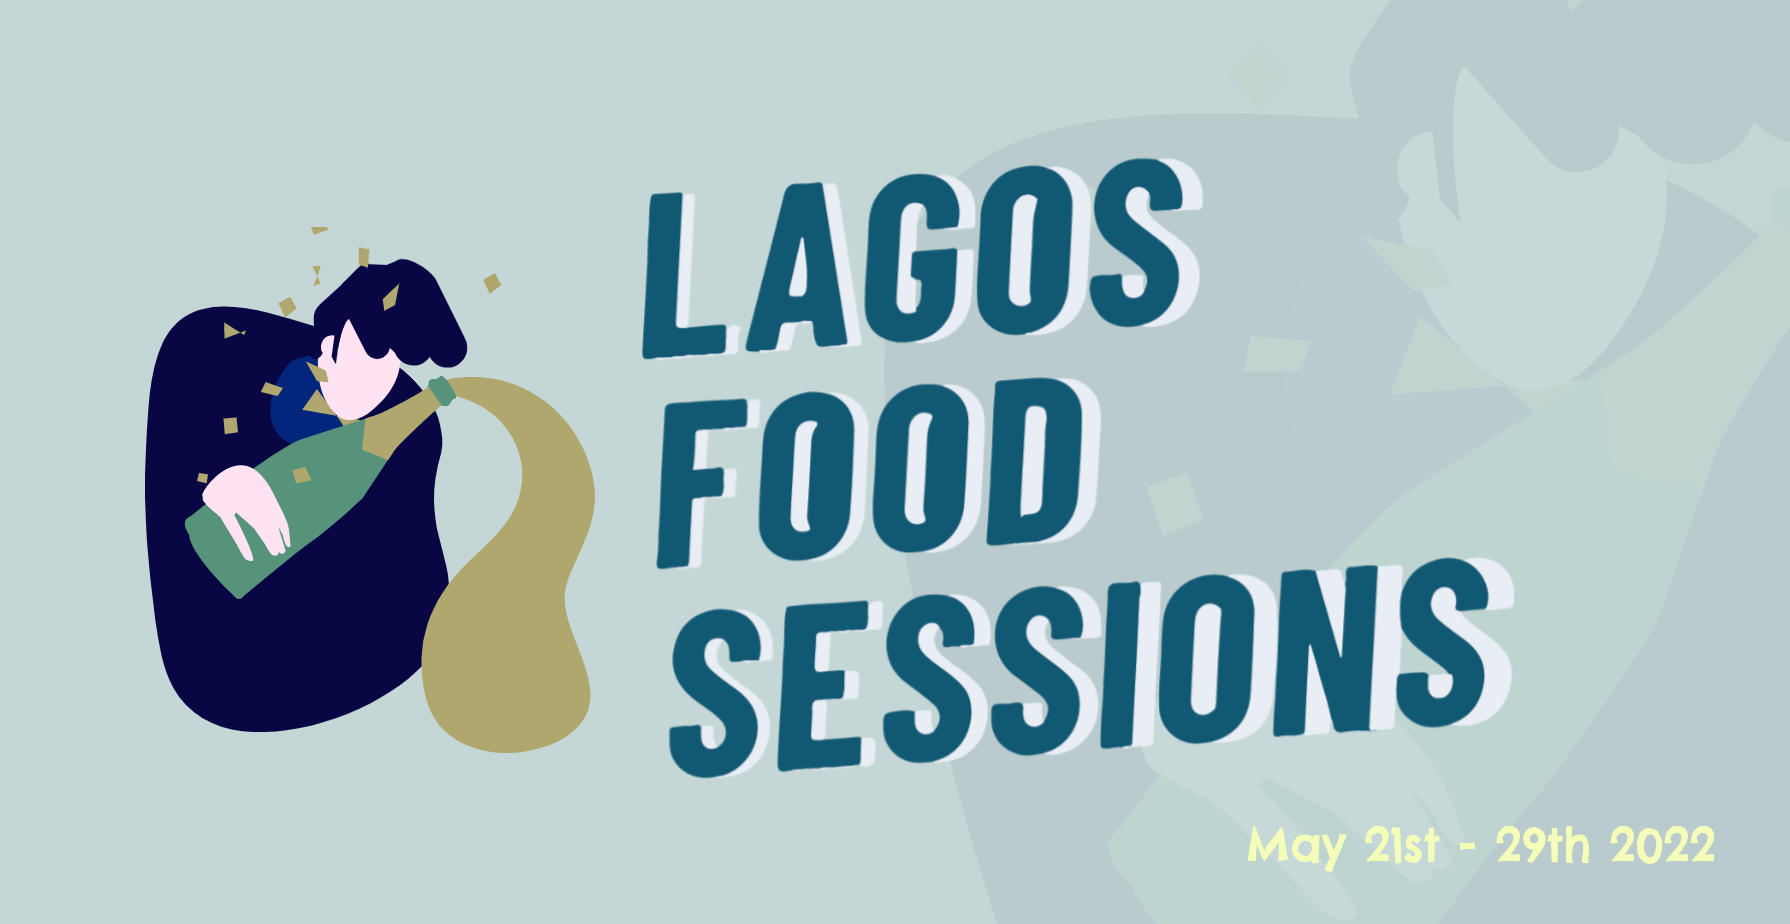 1ª Edição das Lagos Food Sessions chega já no final de Maio